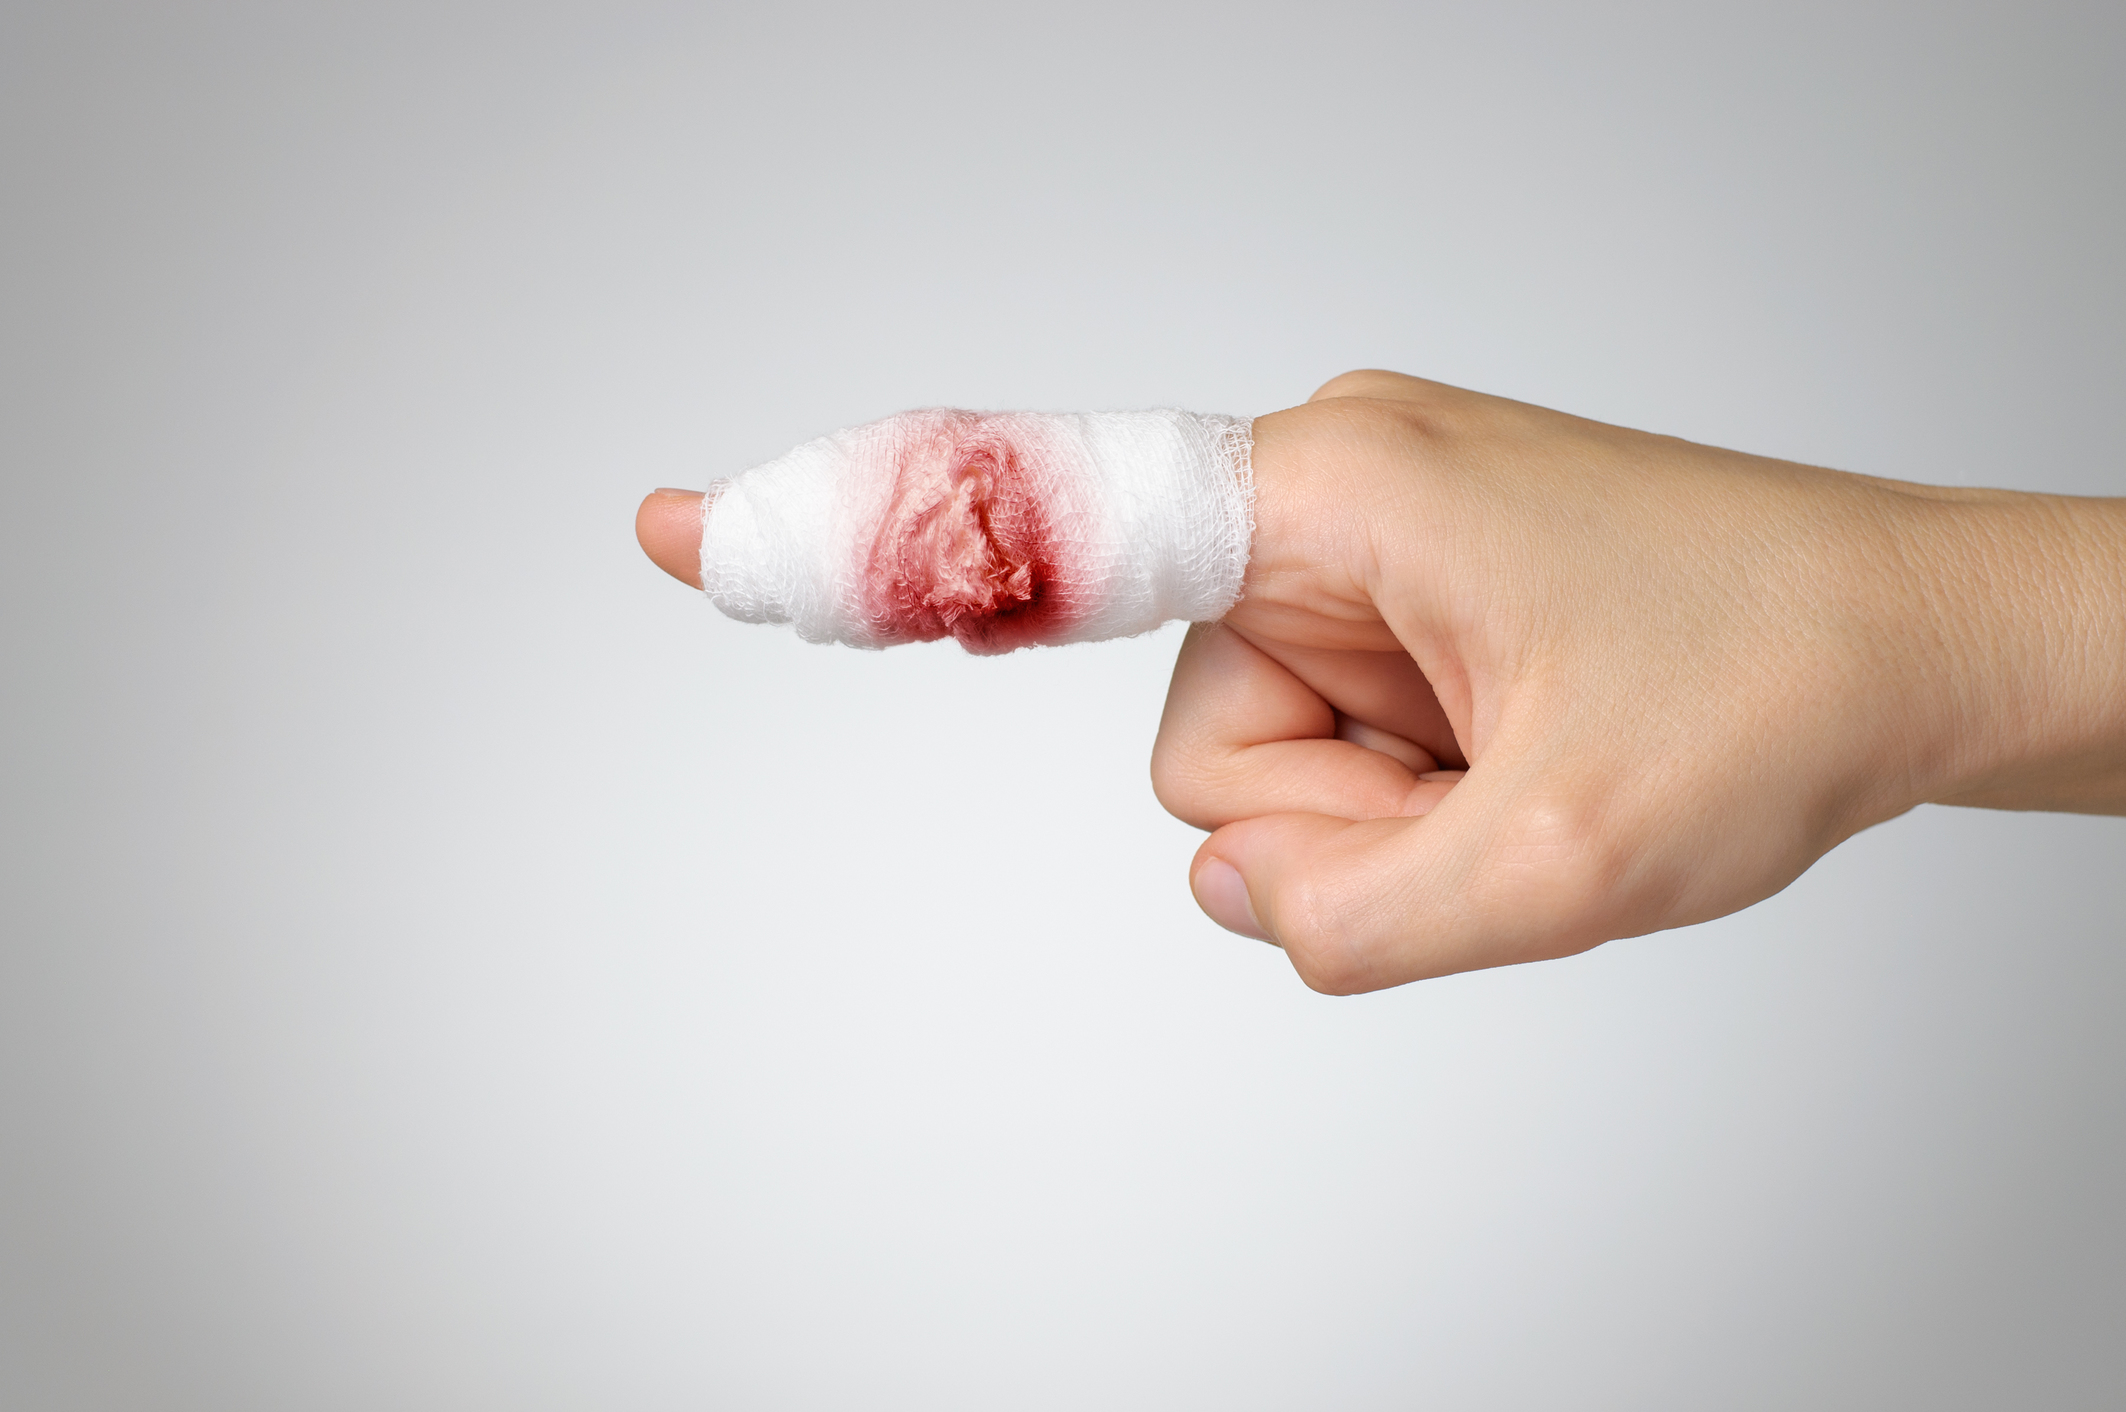 Horrorsérülés: A jegygyűrűje csonkította meg a focista ujját - Fotó (18+) -  Blikk